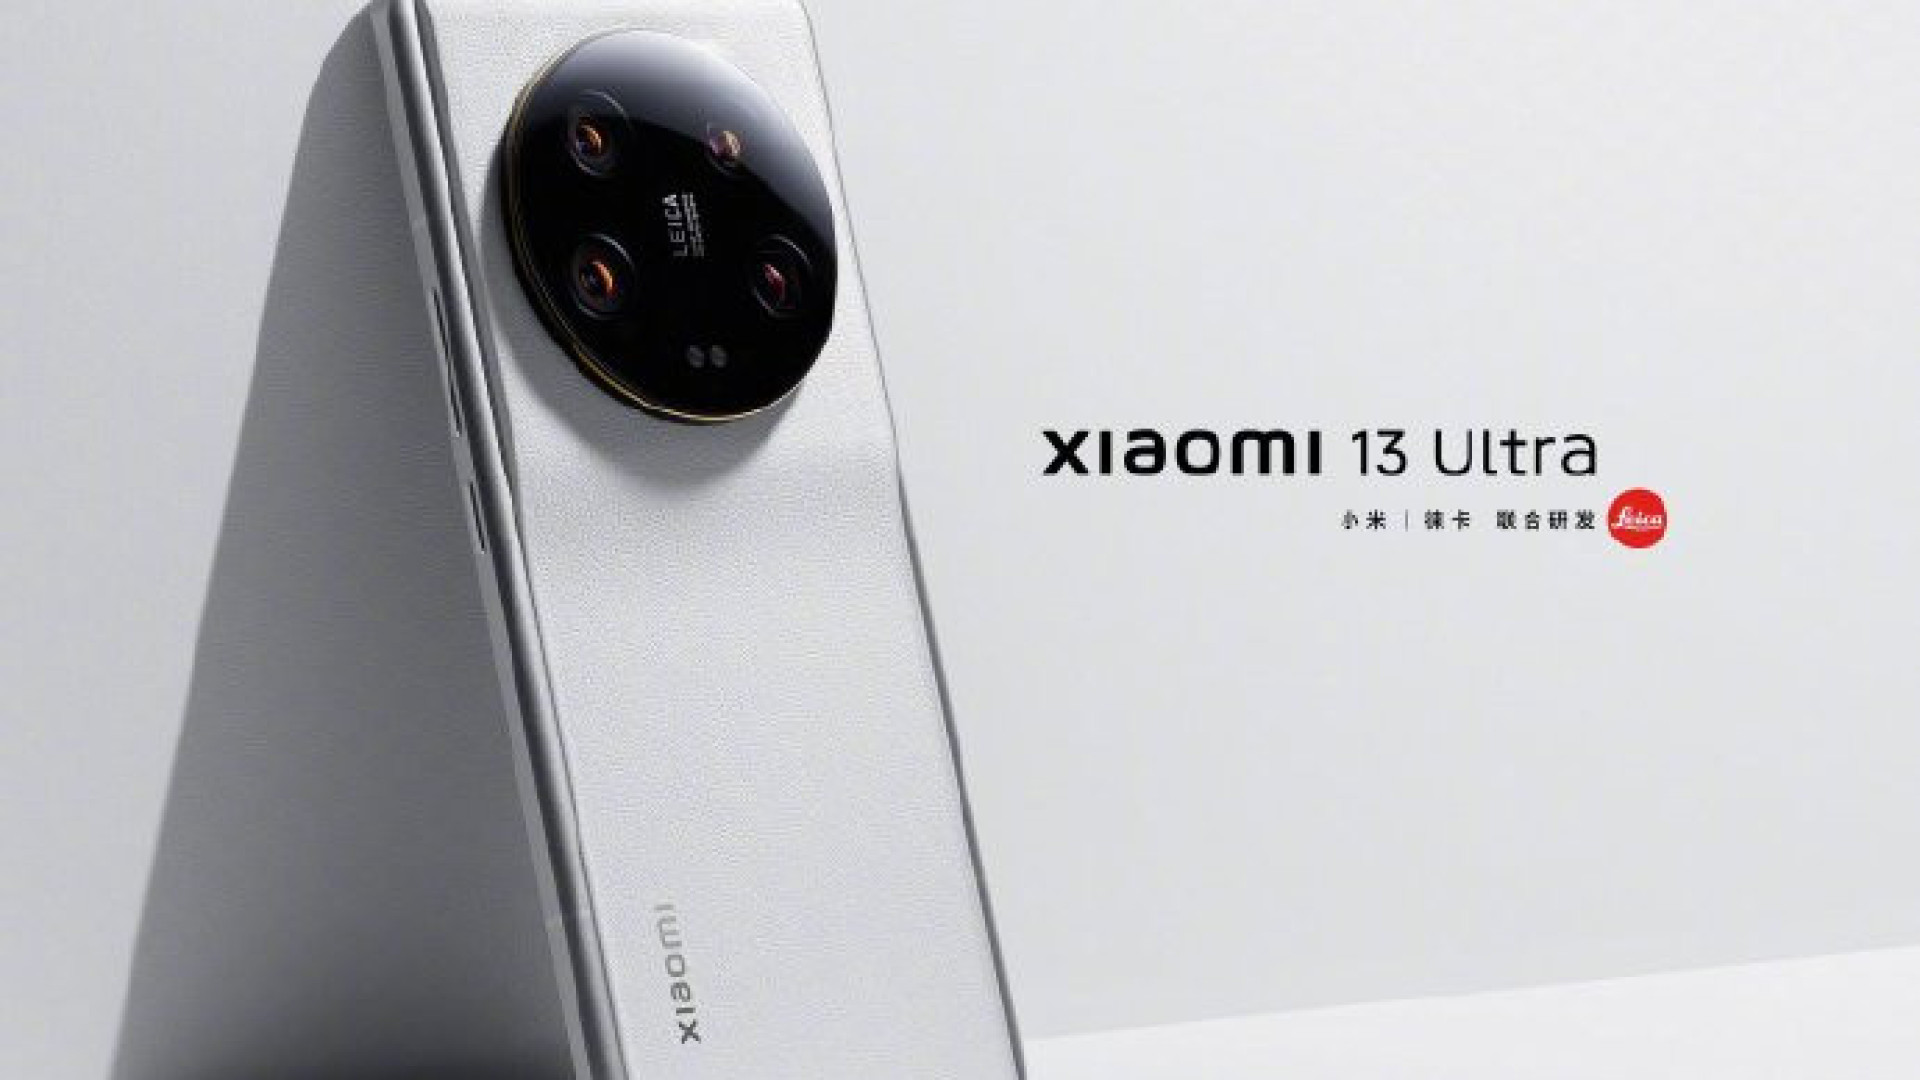 Imagens do novo flagship da Xiaomi já estão circulando; anúncio é hoje